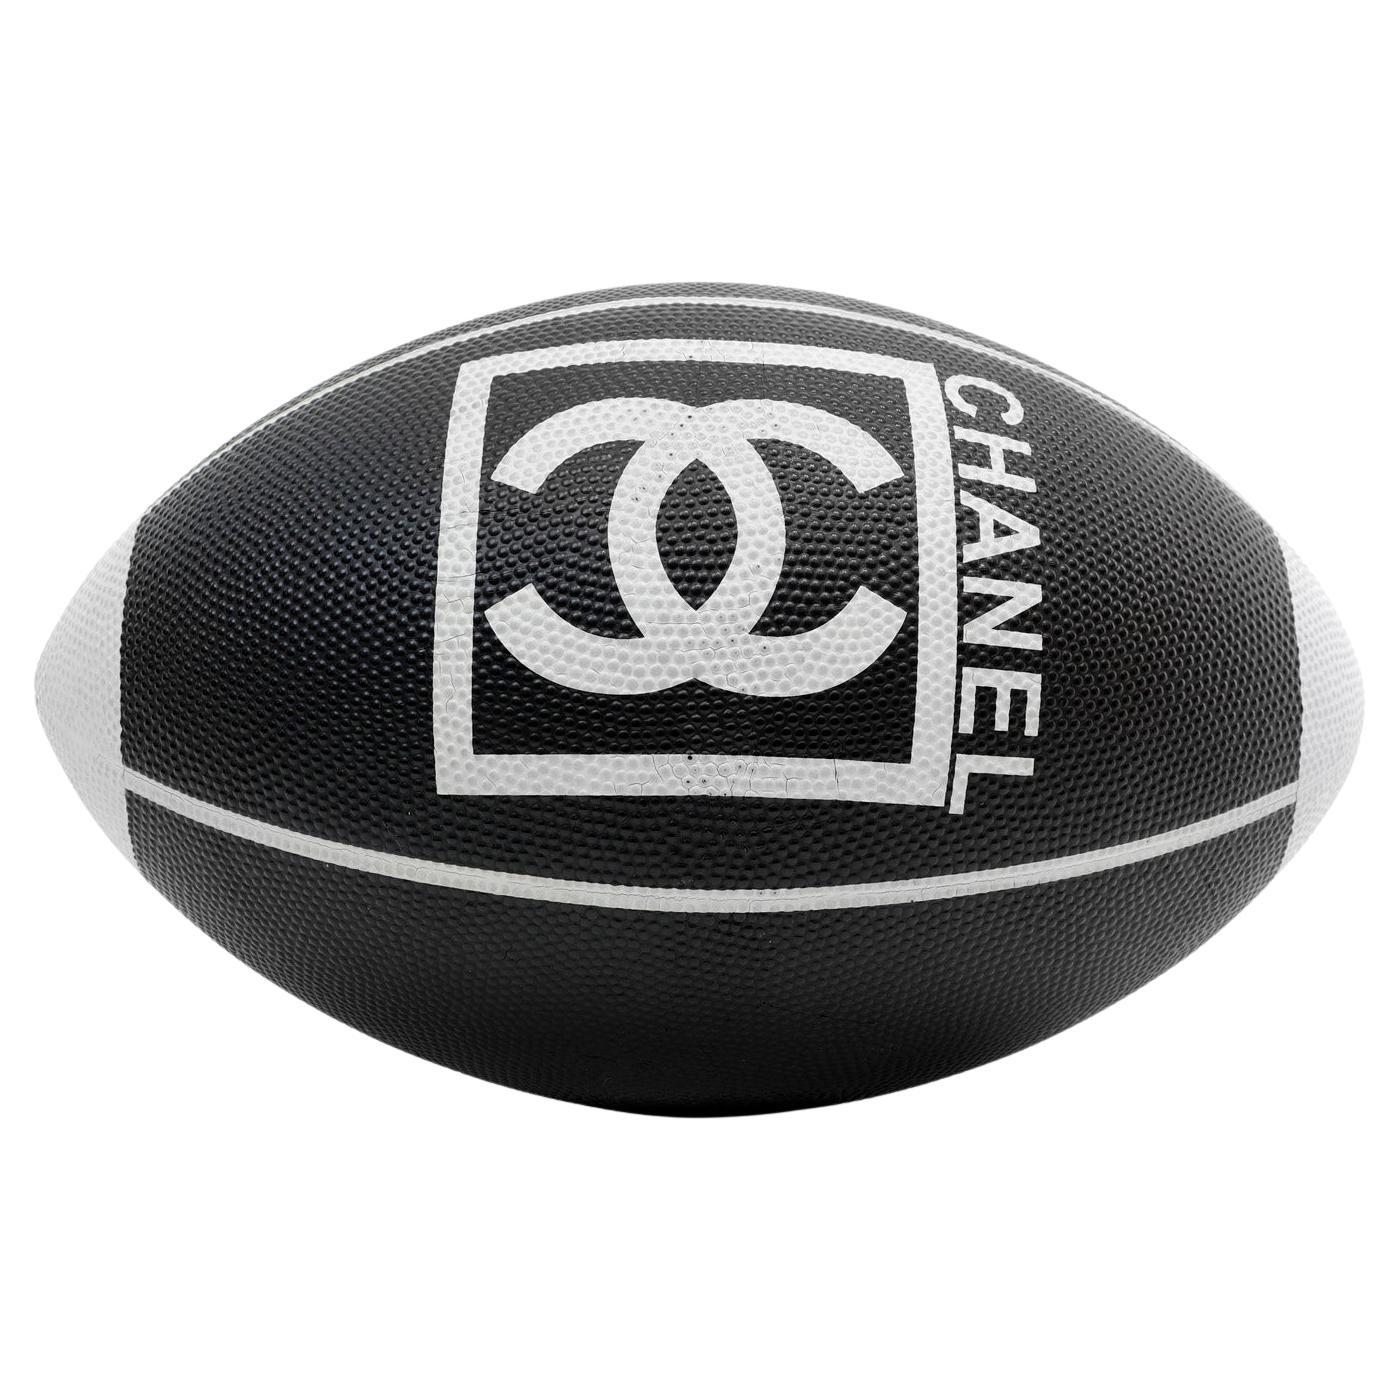 Série de jeux de football de sport noir et blanc de Chanel